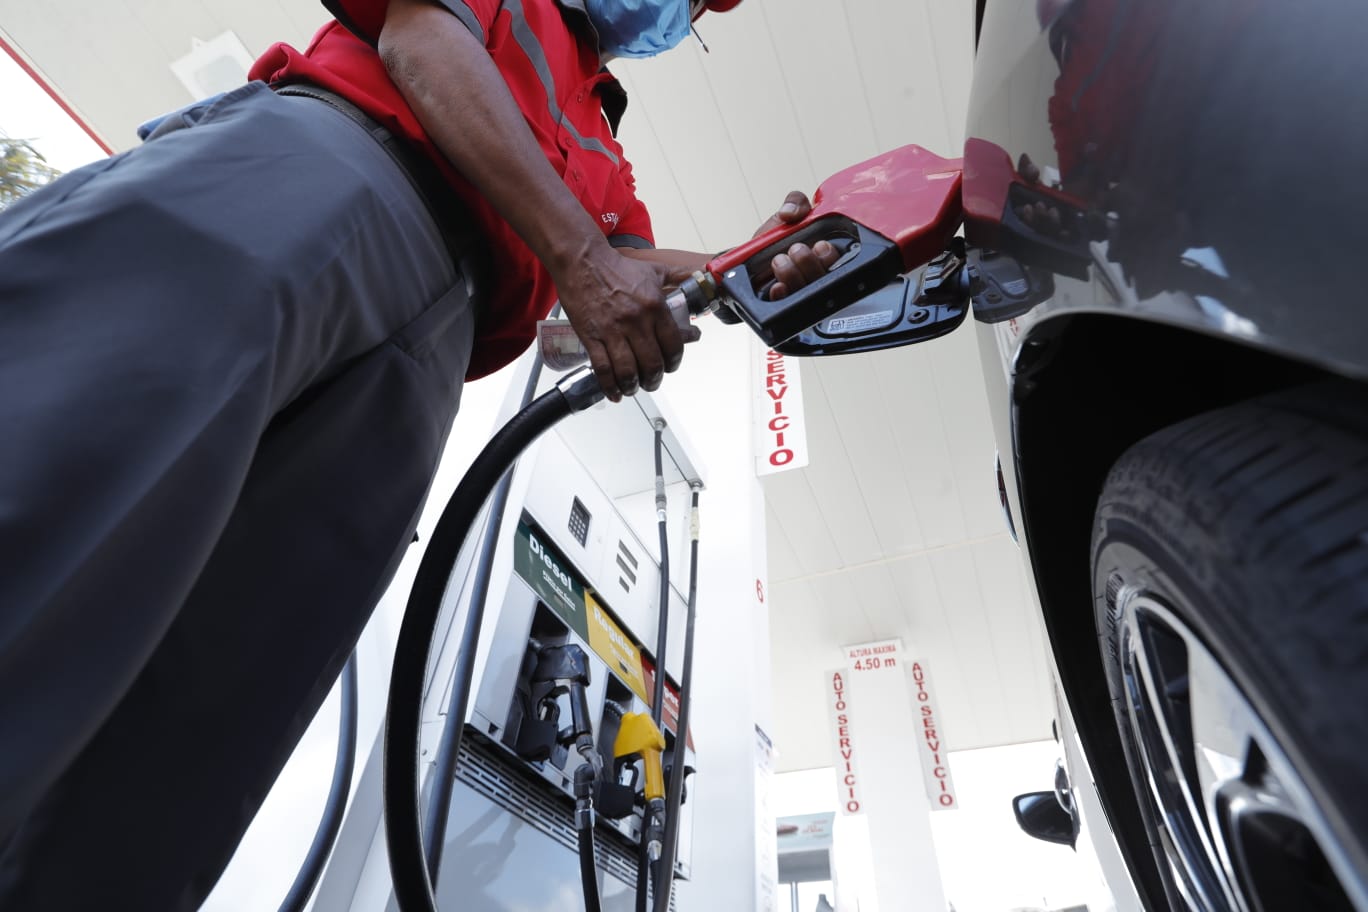 Las estaciones de servicio aplicaron un ajuste de Q1 al galón de gasolina y diésel. (Foto Prensa Libre: Esbín García) 